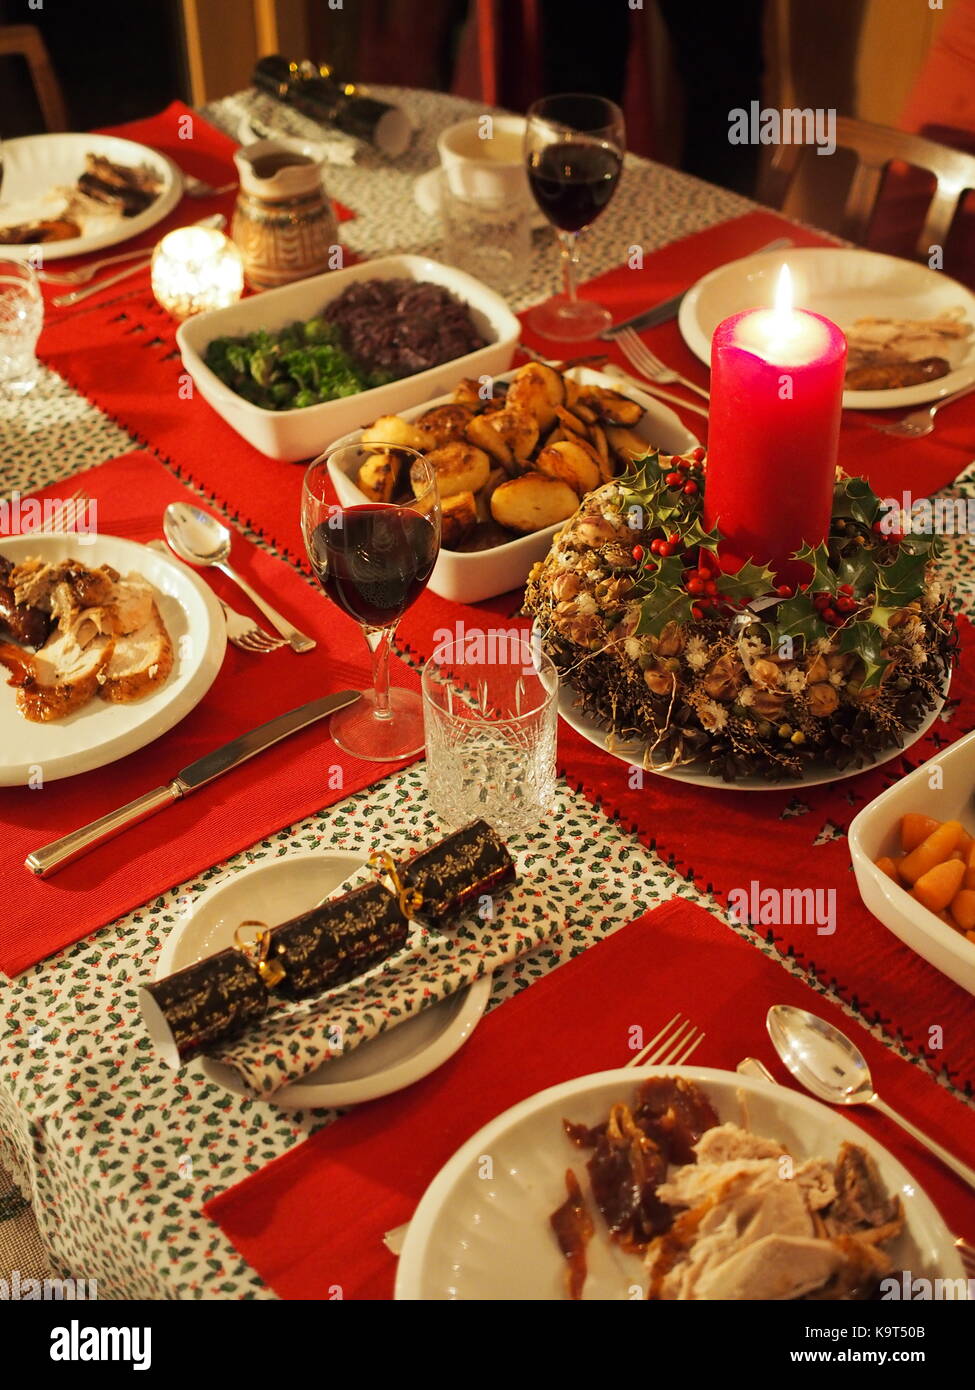 An appetising Christmas dinner Stock Photo